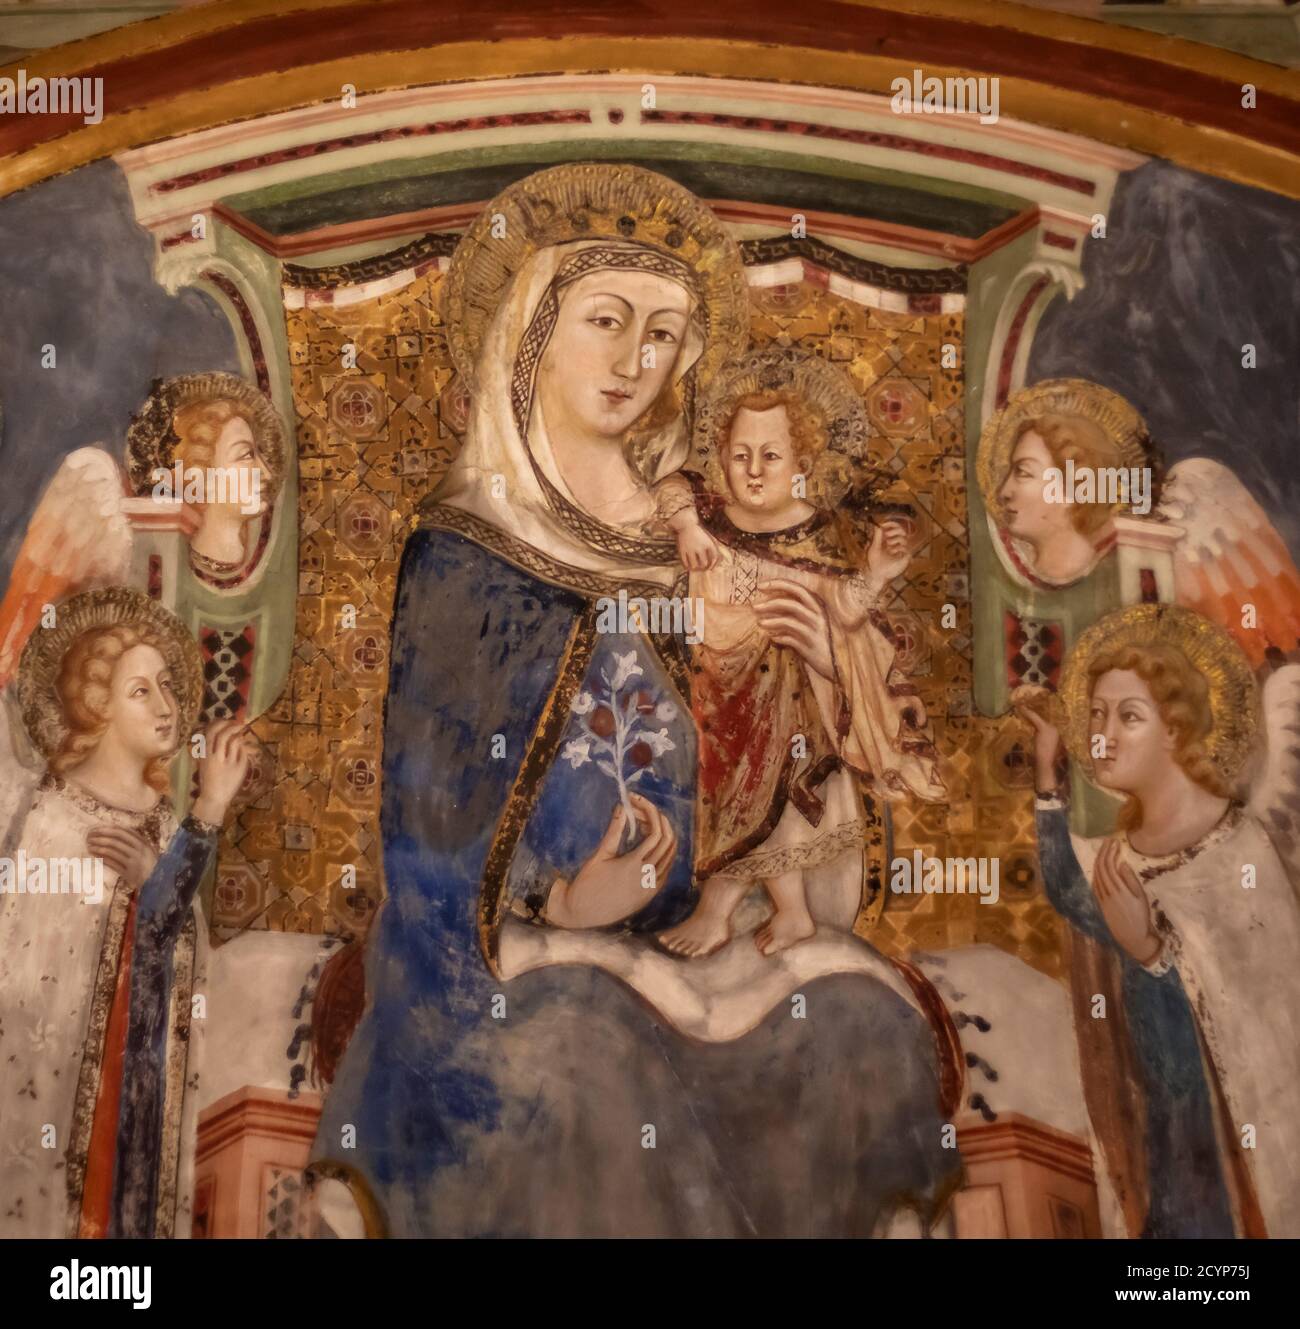 Fresko der Jungfrau und Kind mit zwei Engeln, in der Sacro Speco in Subiaco, Latium, ein schönes Beispiel für mittelalterliche gotische Fresko Arbeit. Stockfoto